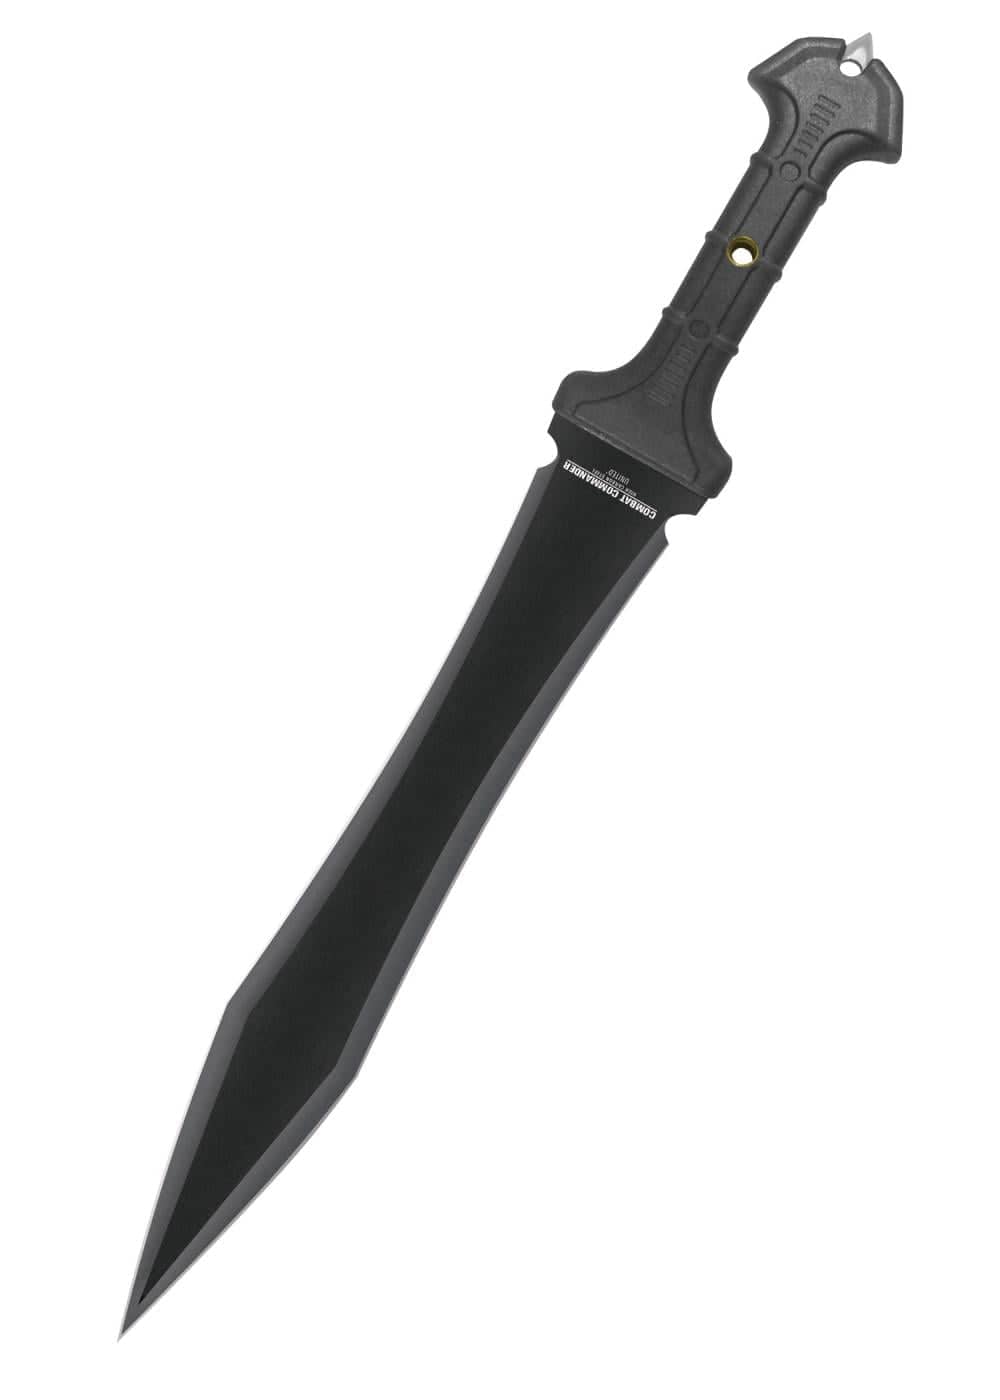 Espada Gladius de combate negra similar a las romanas pero modernizada expuesta en fondo blanco. Vendida por Espadas y más